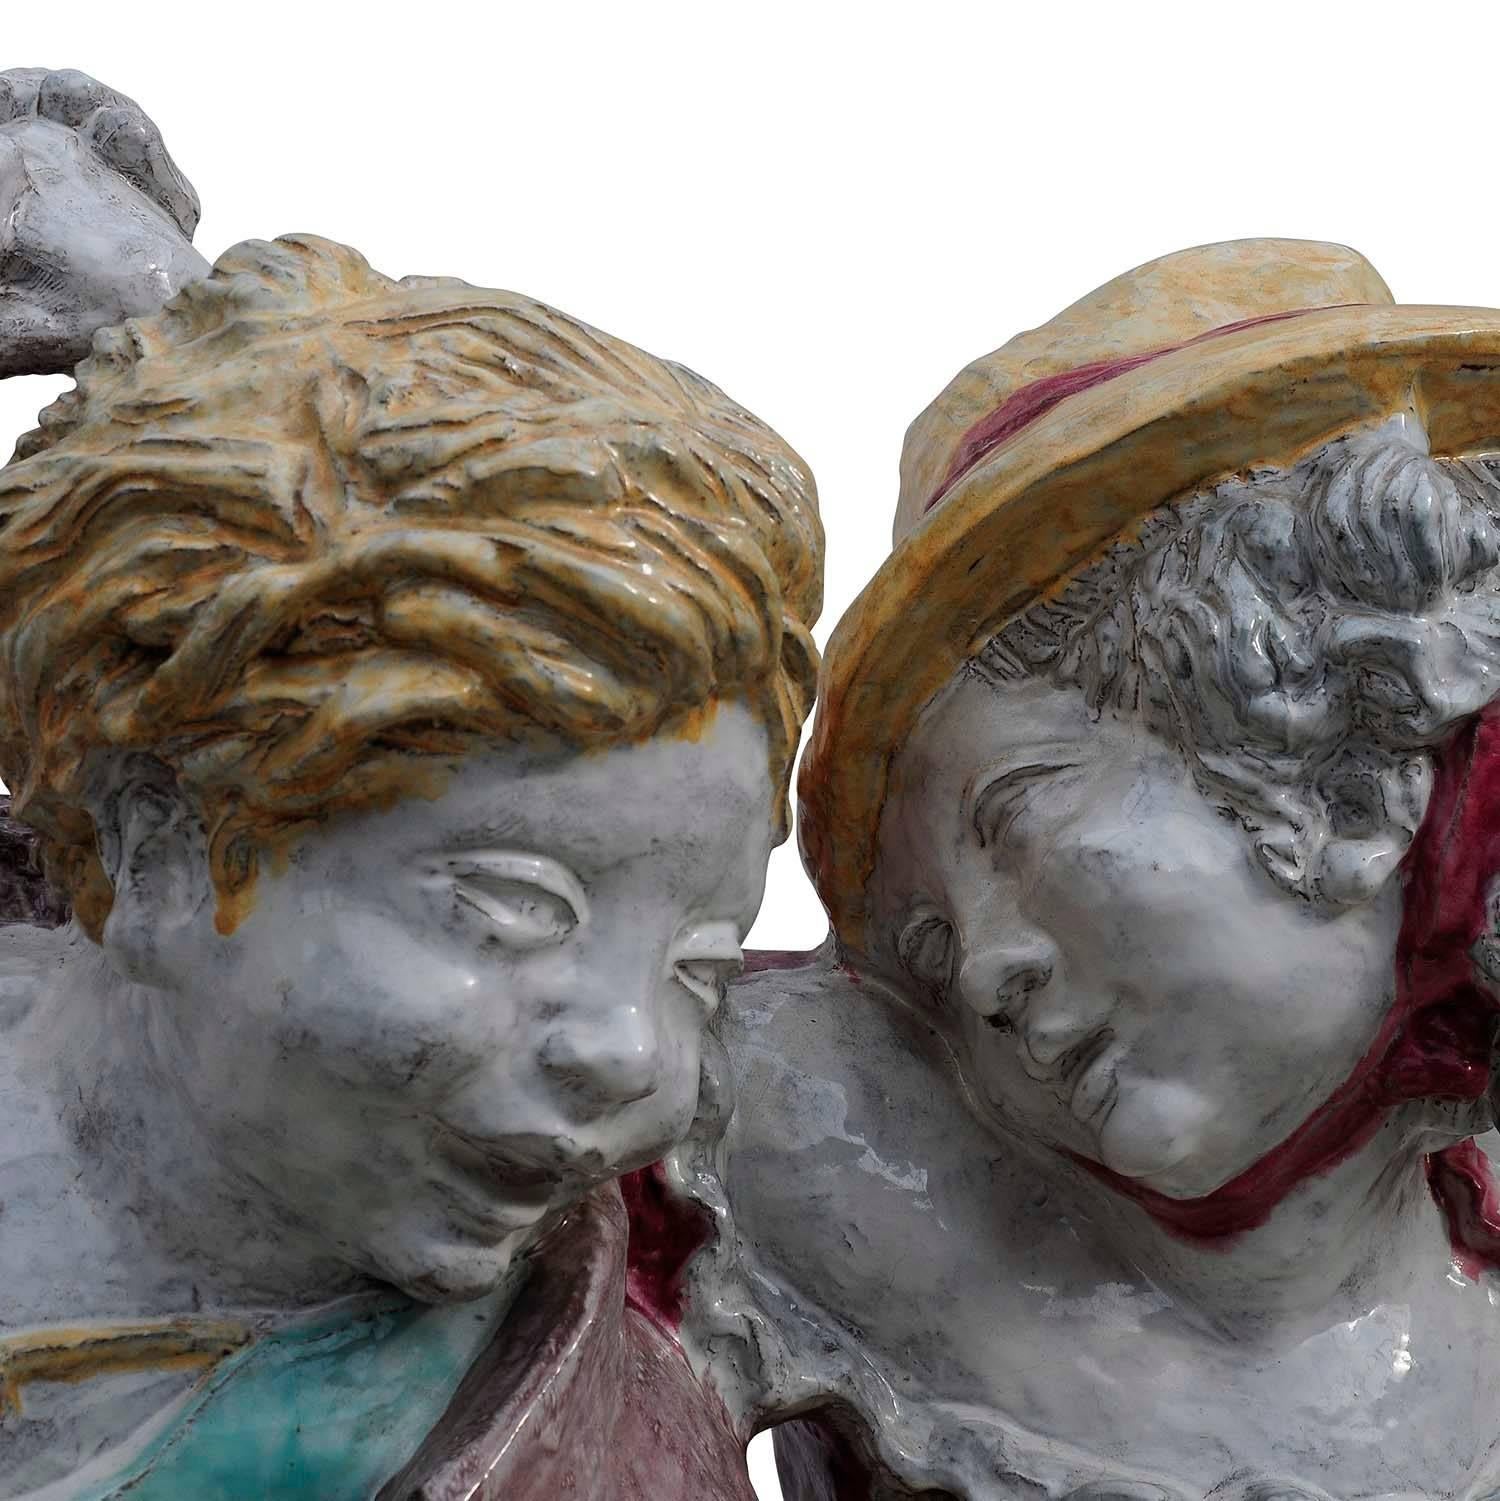 Nympfenburg-Porzellan-Skulptur eines tanzenden Paares von Josef Wackerle

Außergewöhnliche Porzellan-Gartenskulptur in Lebensgröße in Form eines tanzenden Paares. Entworfen um 1908 von dem berühmten Bildhauer Josef Wackerle. Hergestellt in